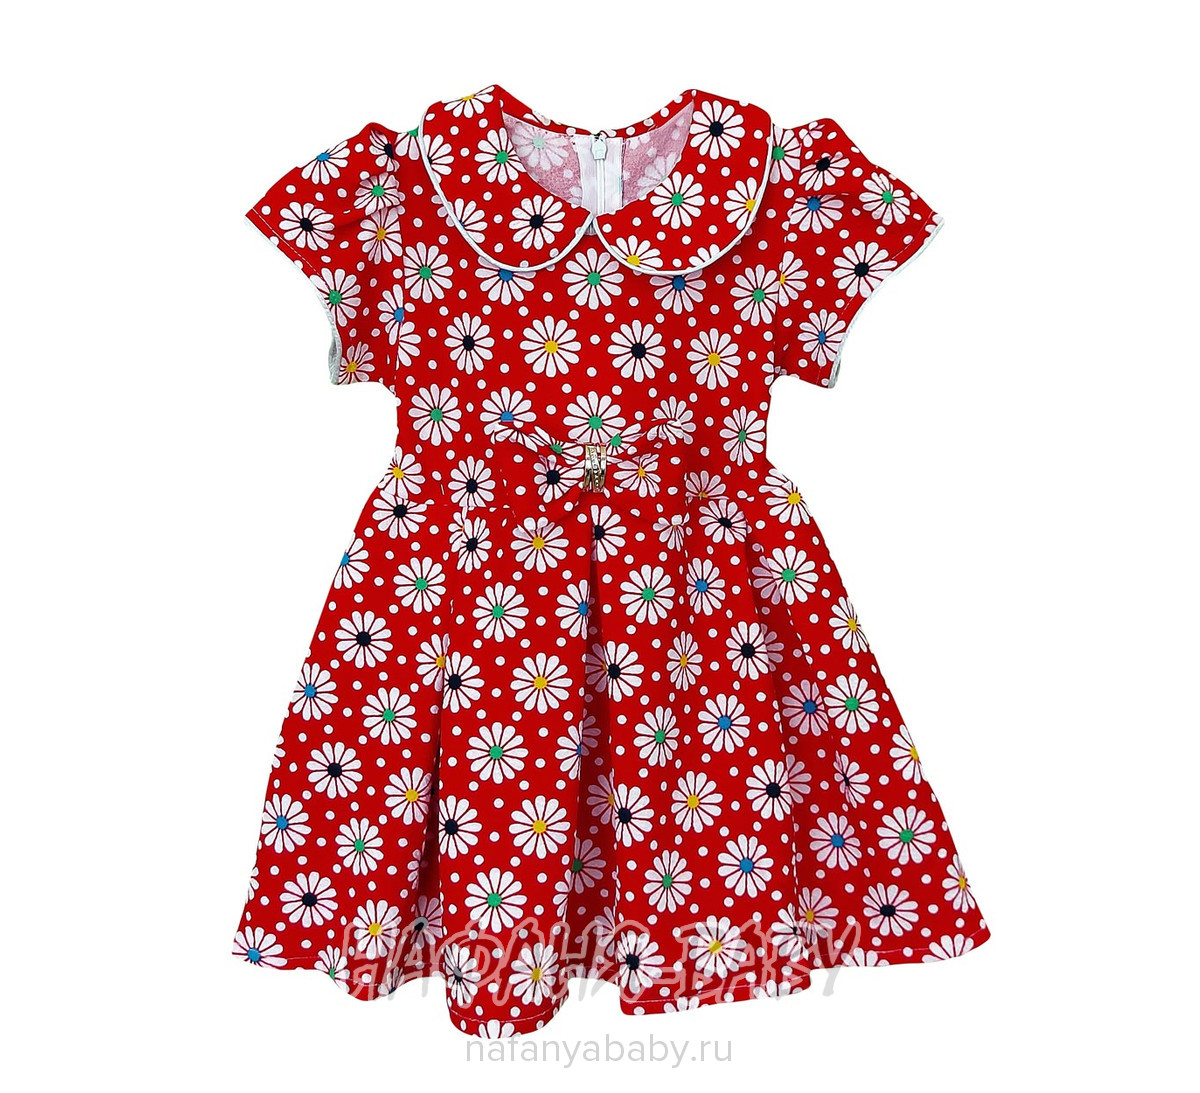 Детское платье KGMART, купить в интернет магазине Нафаня. арт: 2199.